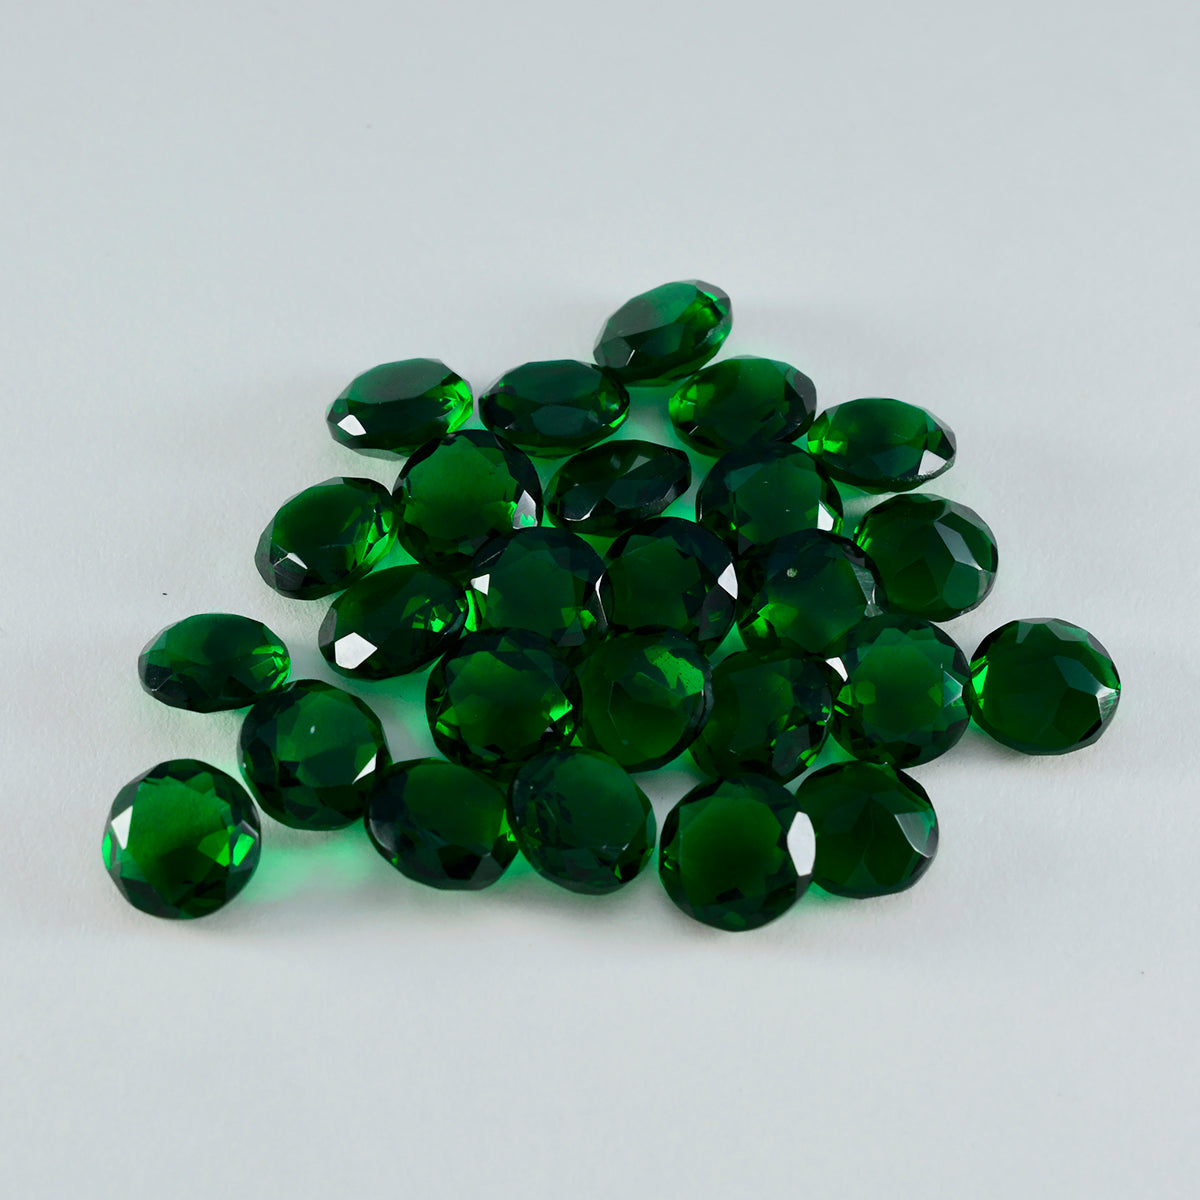 riyogems 1pc グリーン エメラルド CZ ファセット 4x4 mm ラウンド形状の素晴らしい品質の宝石